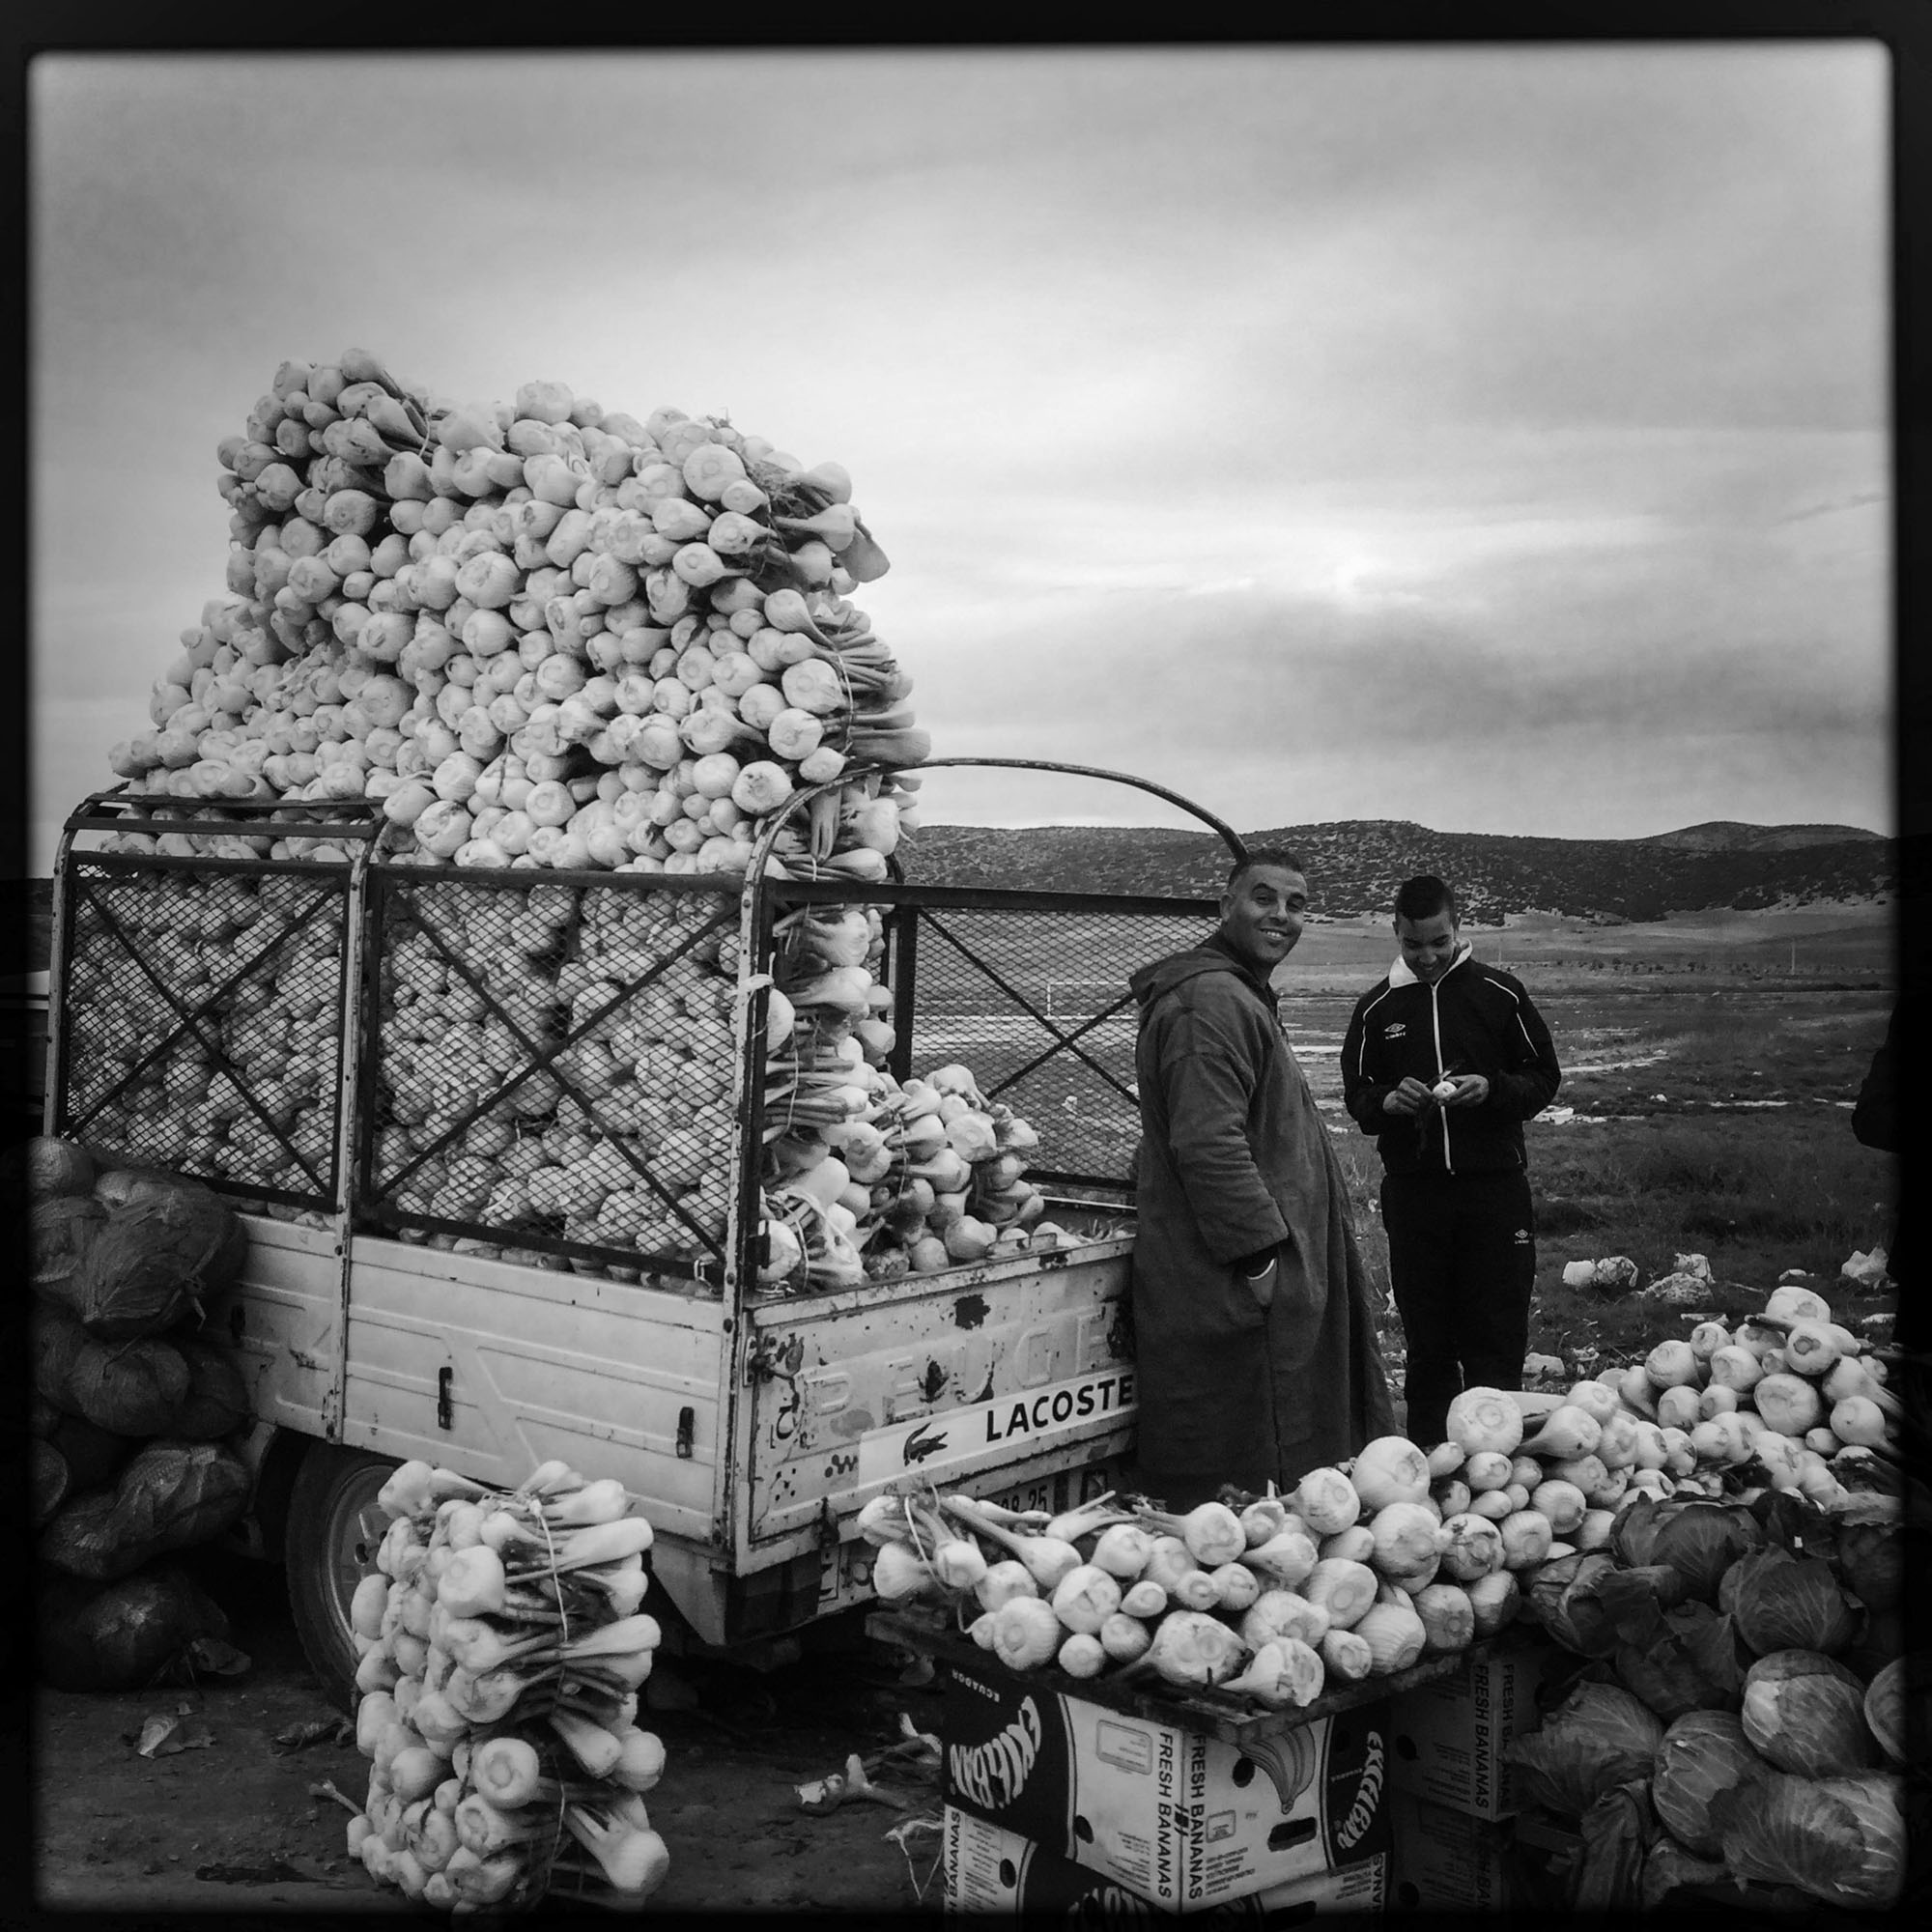 Sur la route entre Biskra et Constantine, les terres trés fertiles permettent à de nombreux paysans de vendre leurs récoltes sur le bord de la route. 9/02/2016, ALGERIE.